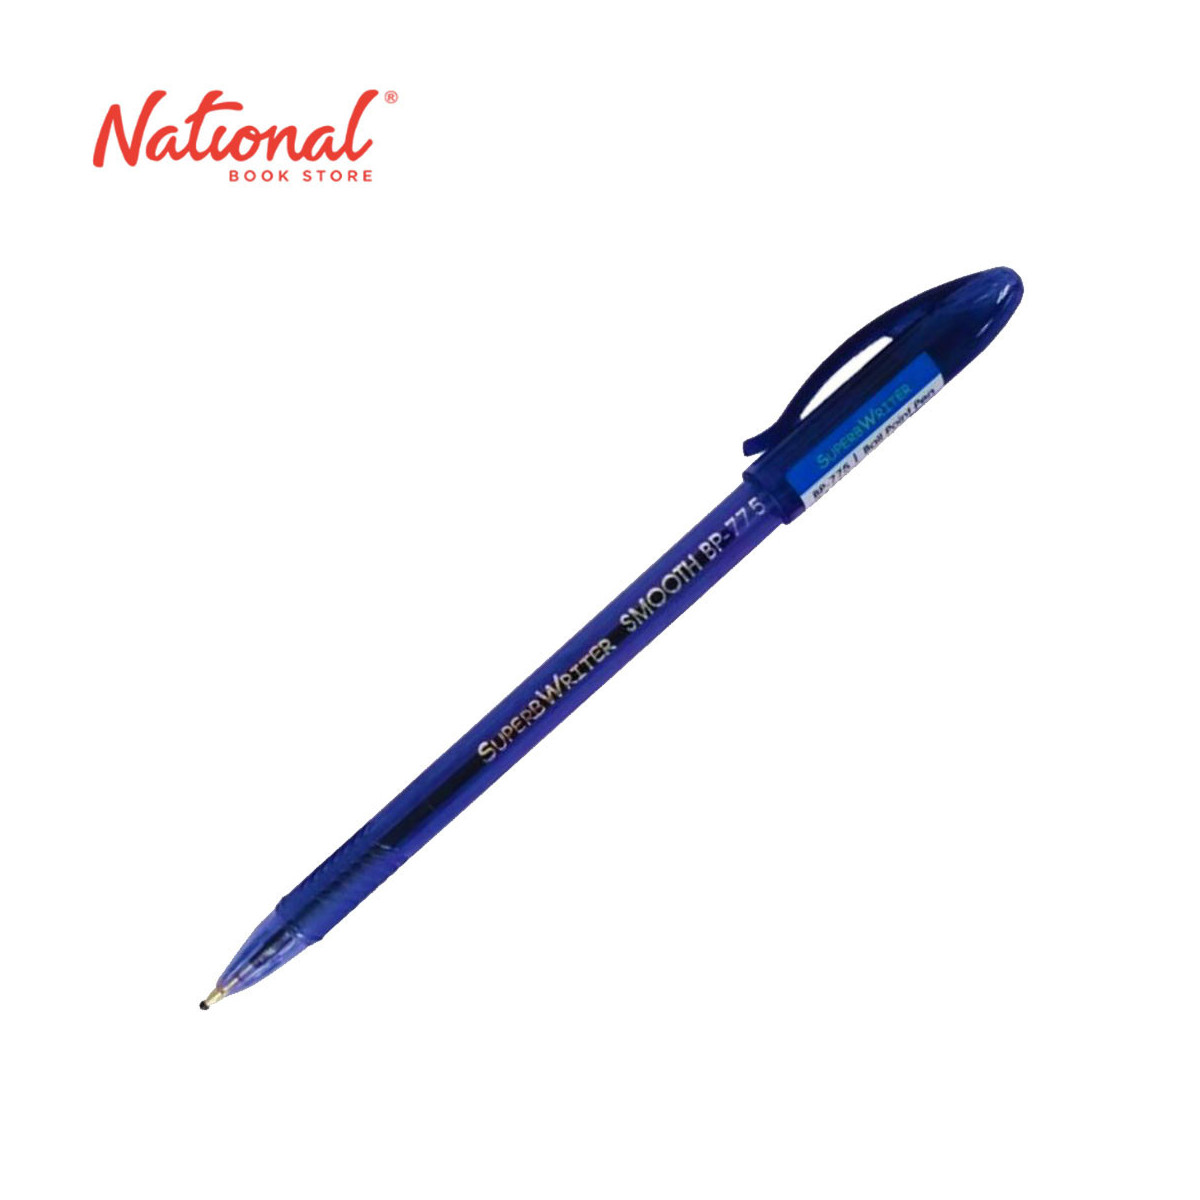 Superbwriter Ballpoint Pen Stick 0.5mm, Blue BP775 - School & Office Supplies - Ballpen